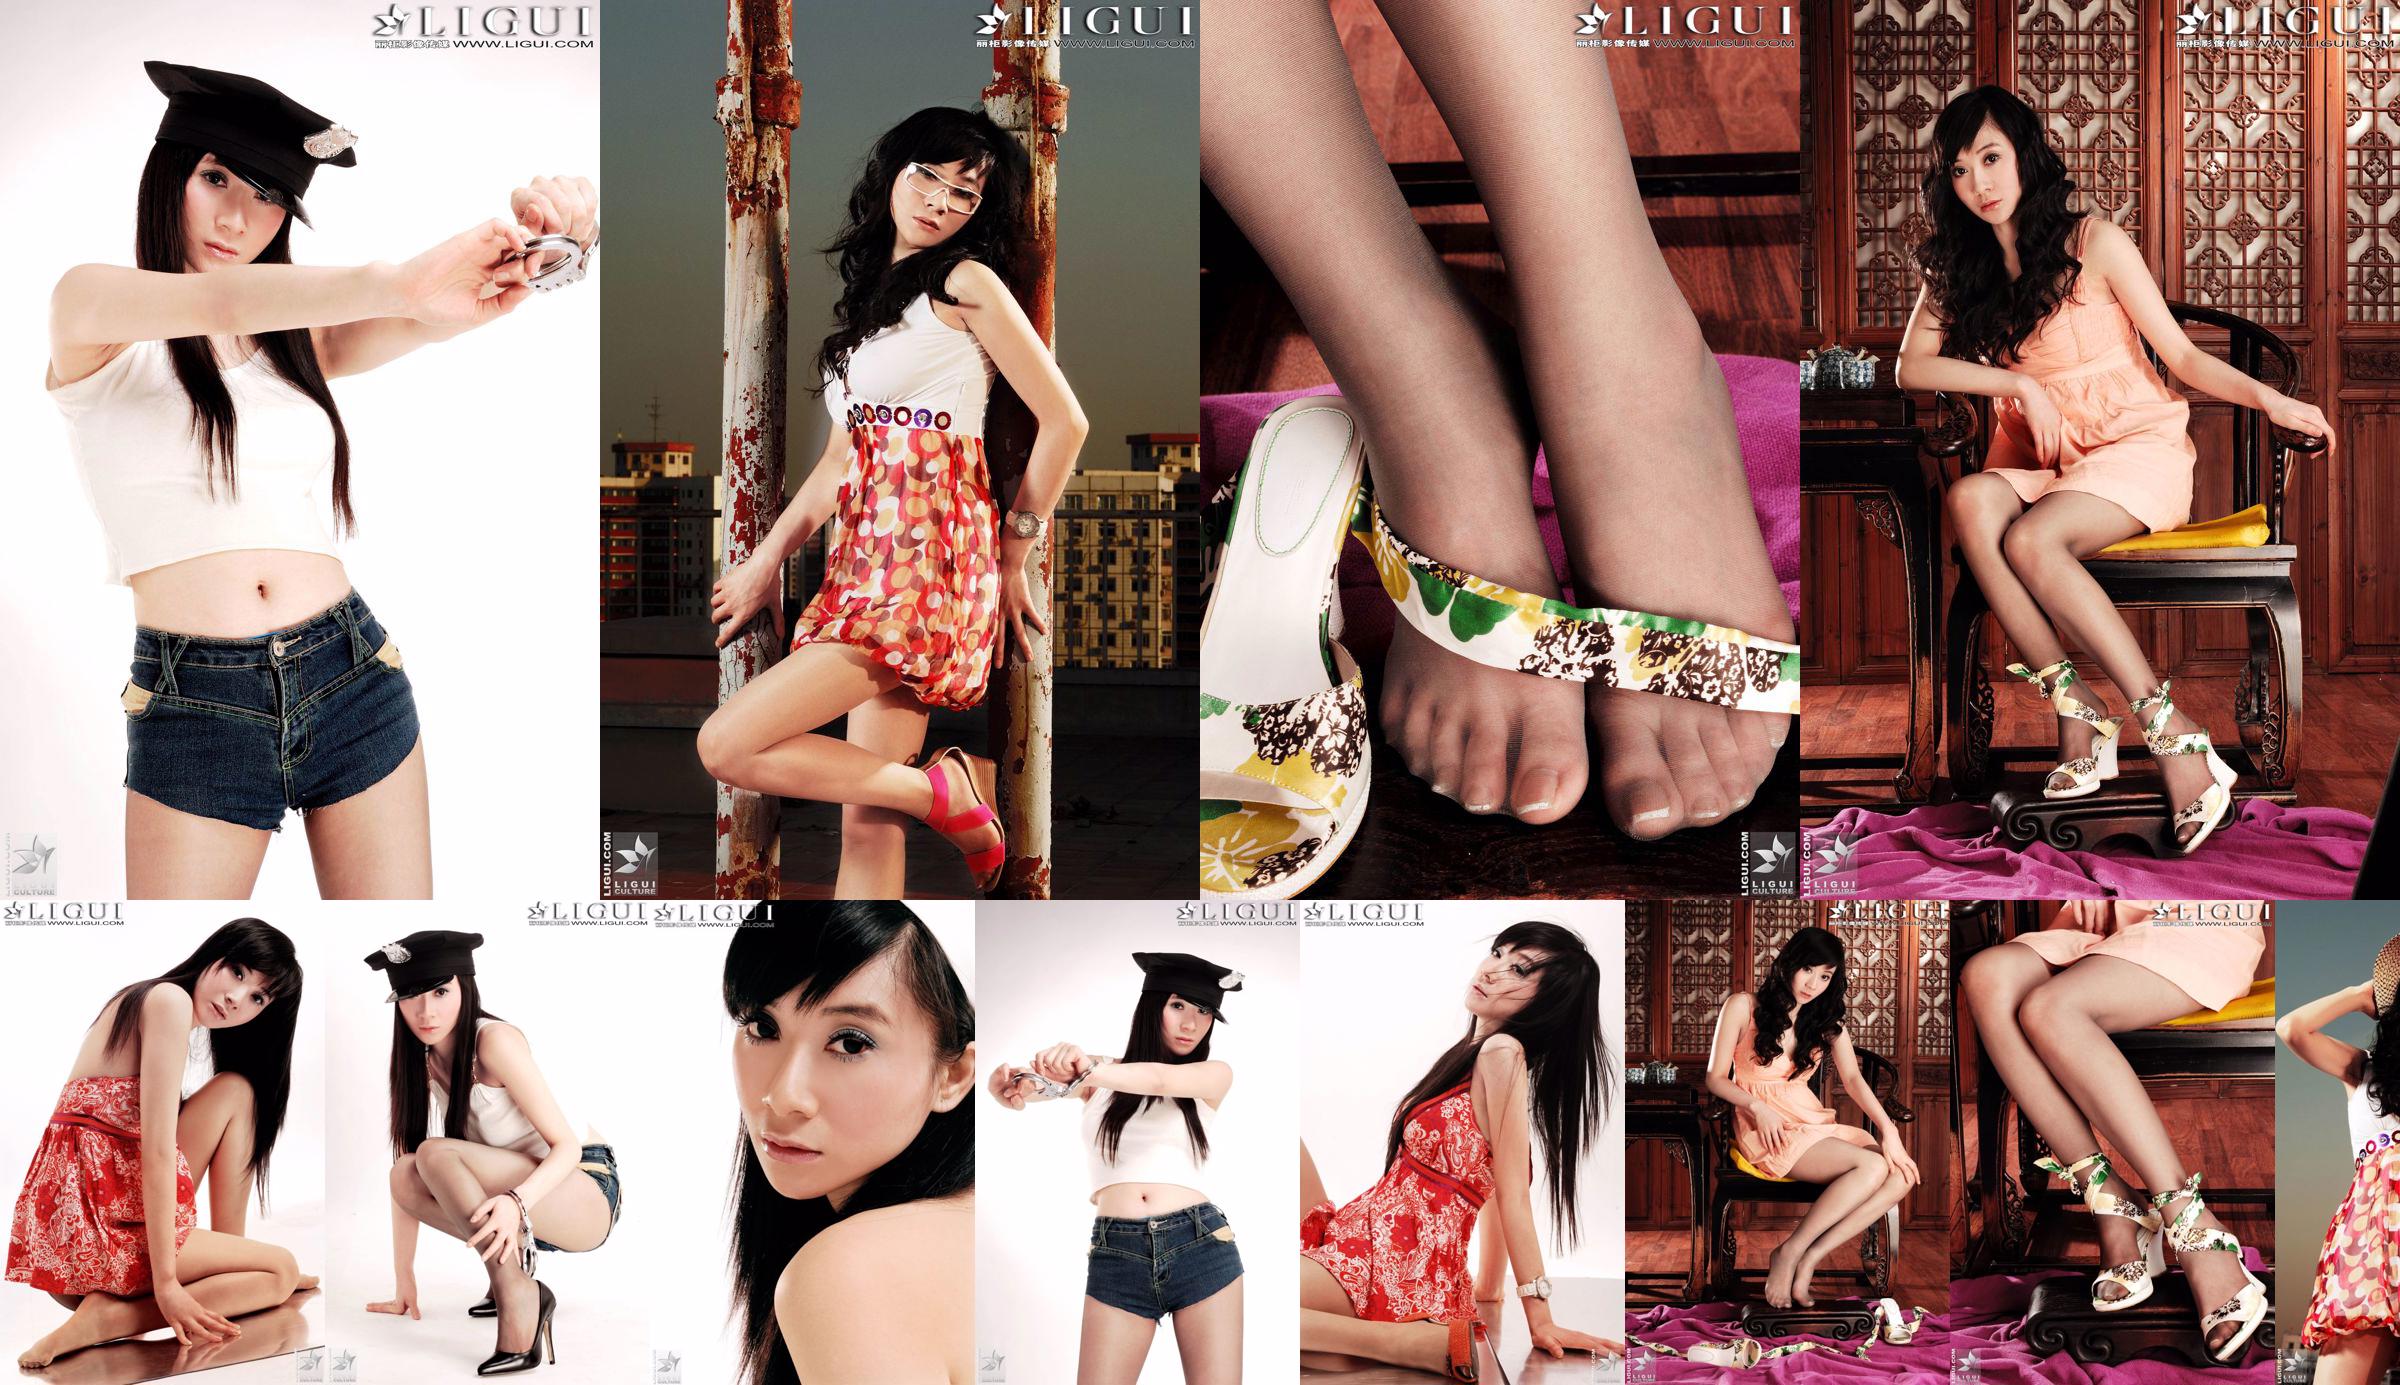 [丽 柜 LiGui] Gambar Foto Model Jinxin Silky Foot dan Beautiful Legs No.051c31 Halaman 1